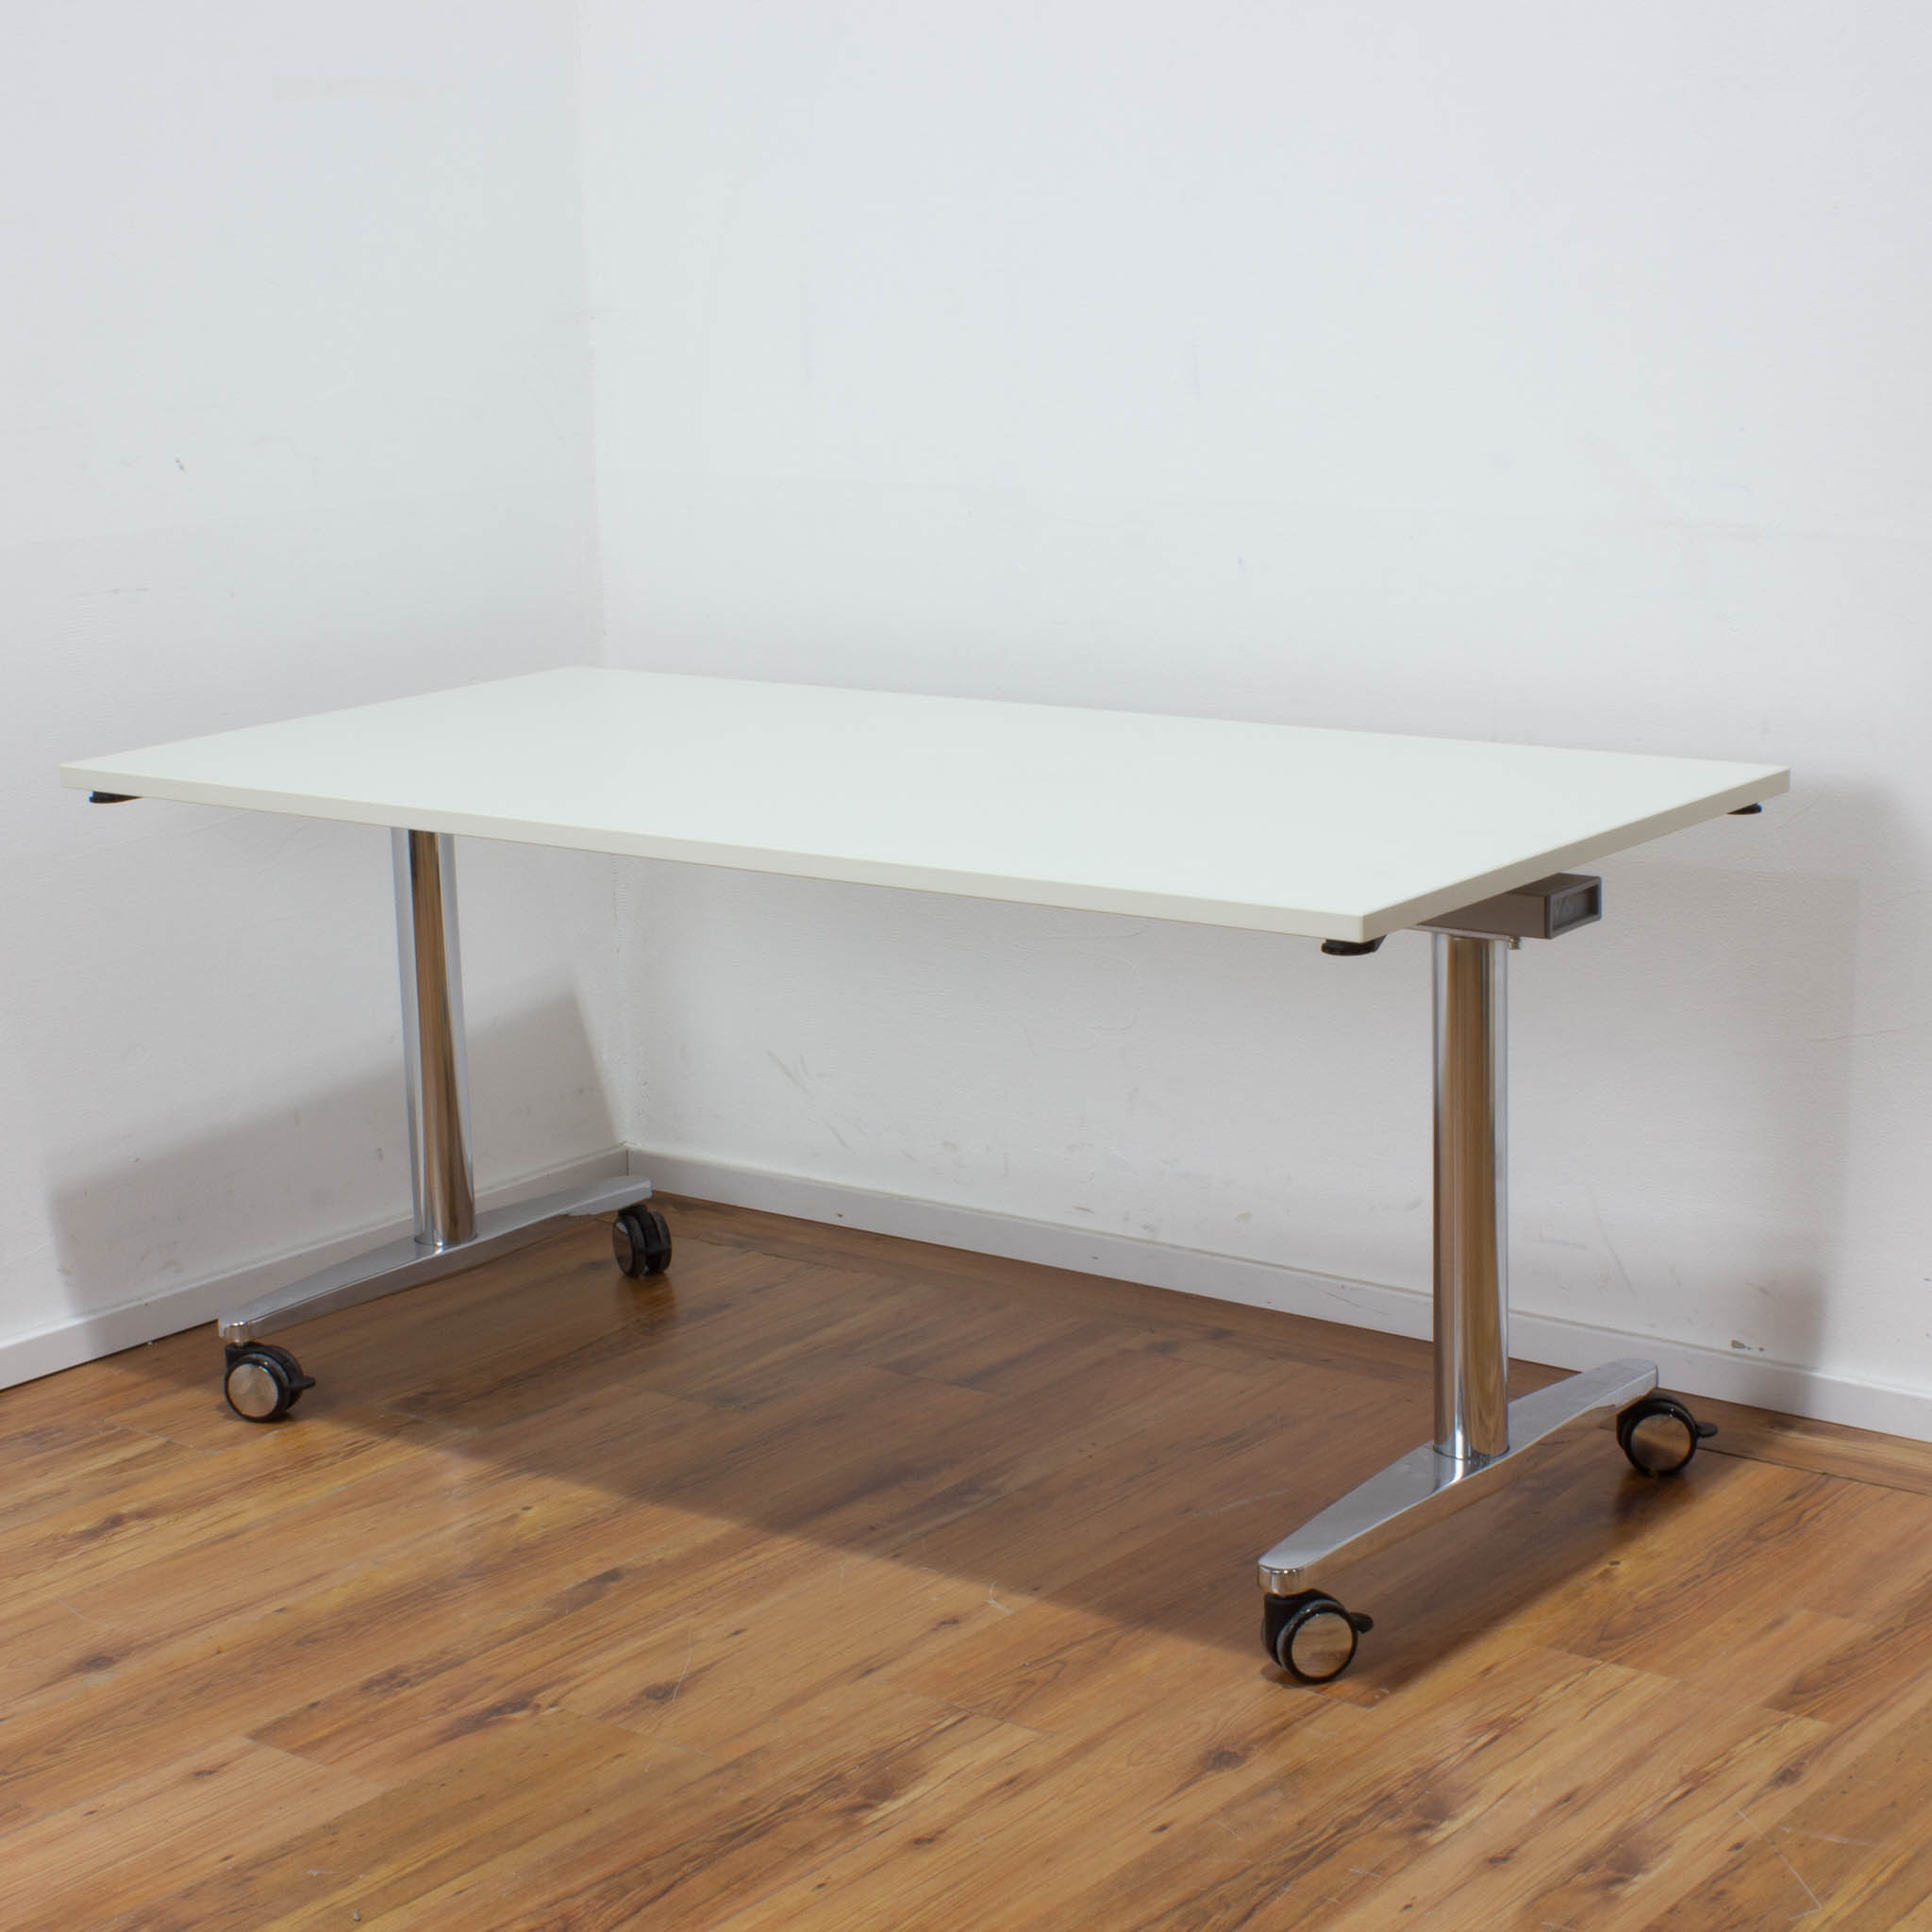 Schreibtisch - weiß - klappbar - 160 x 80 cm - koppelbar mit weiteren Schreibtischen